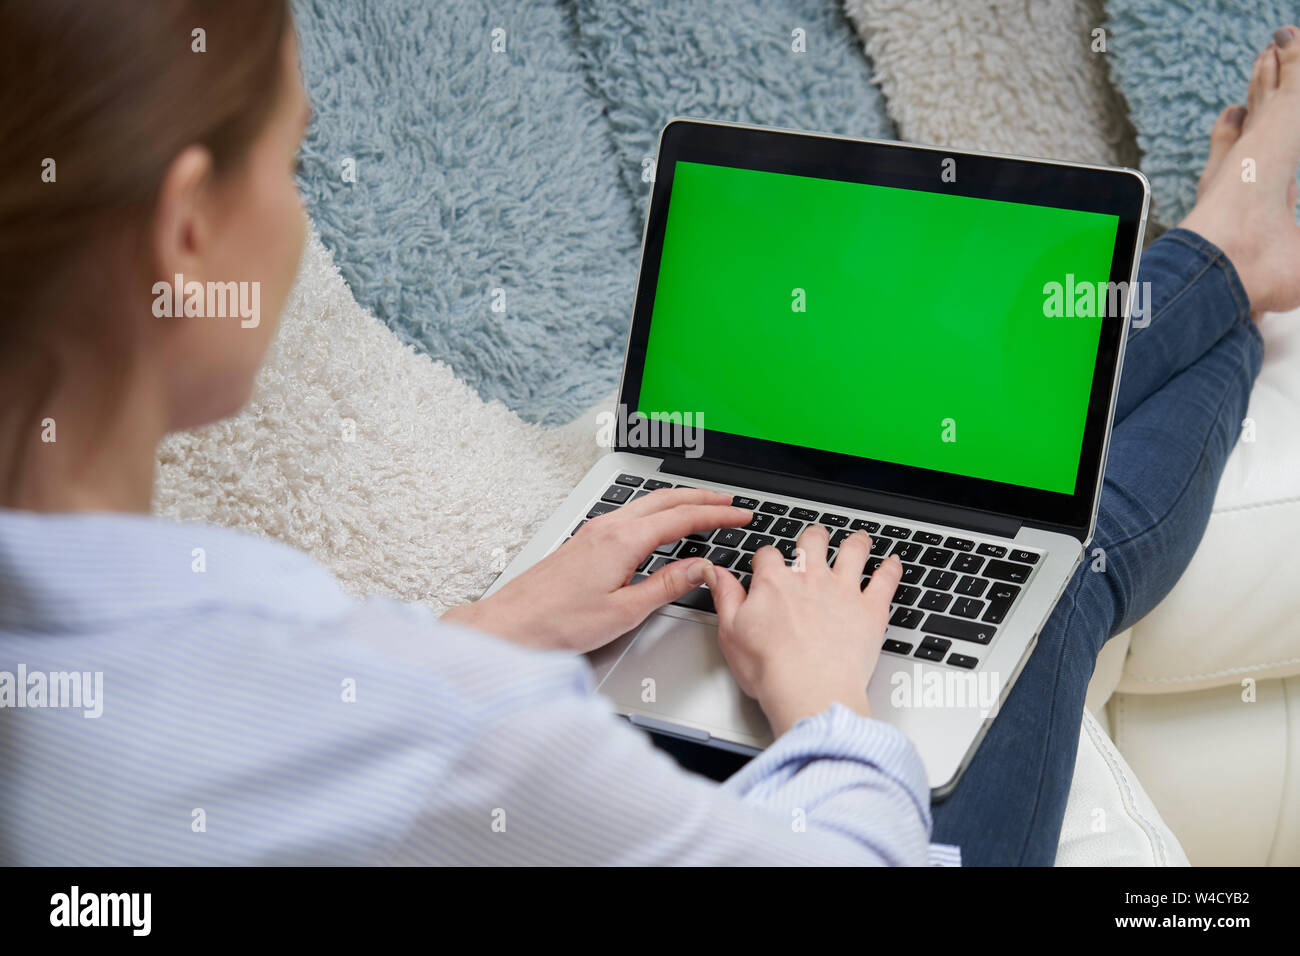 Au cours de l'épaule de Woman Lying On Sofa Using laptop écran vert Banque D'Images